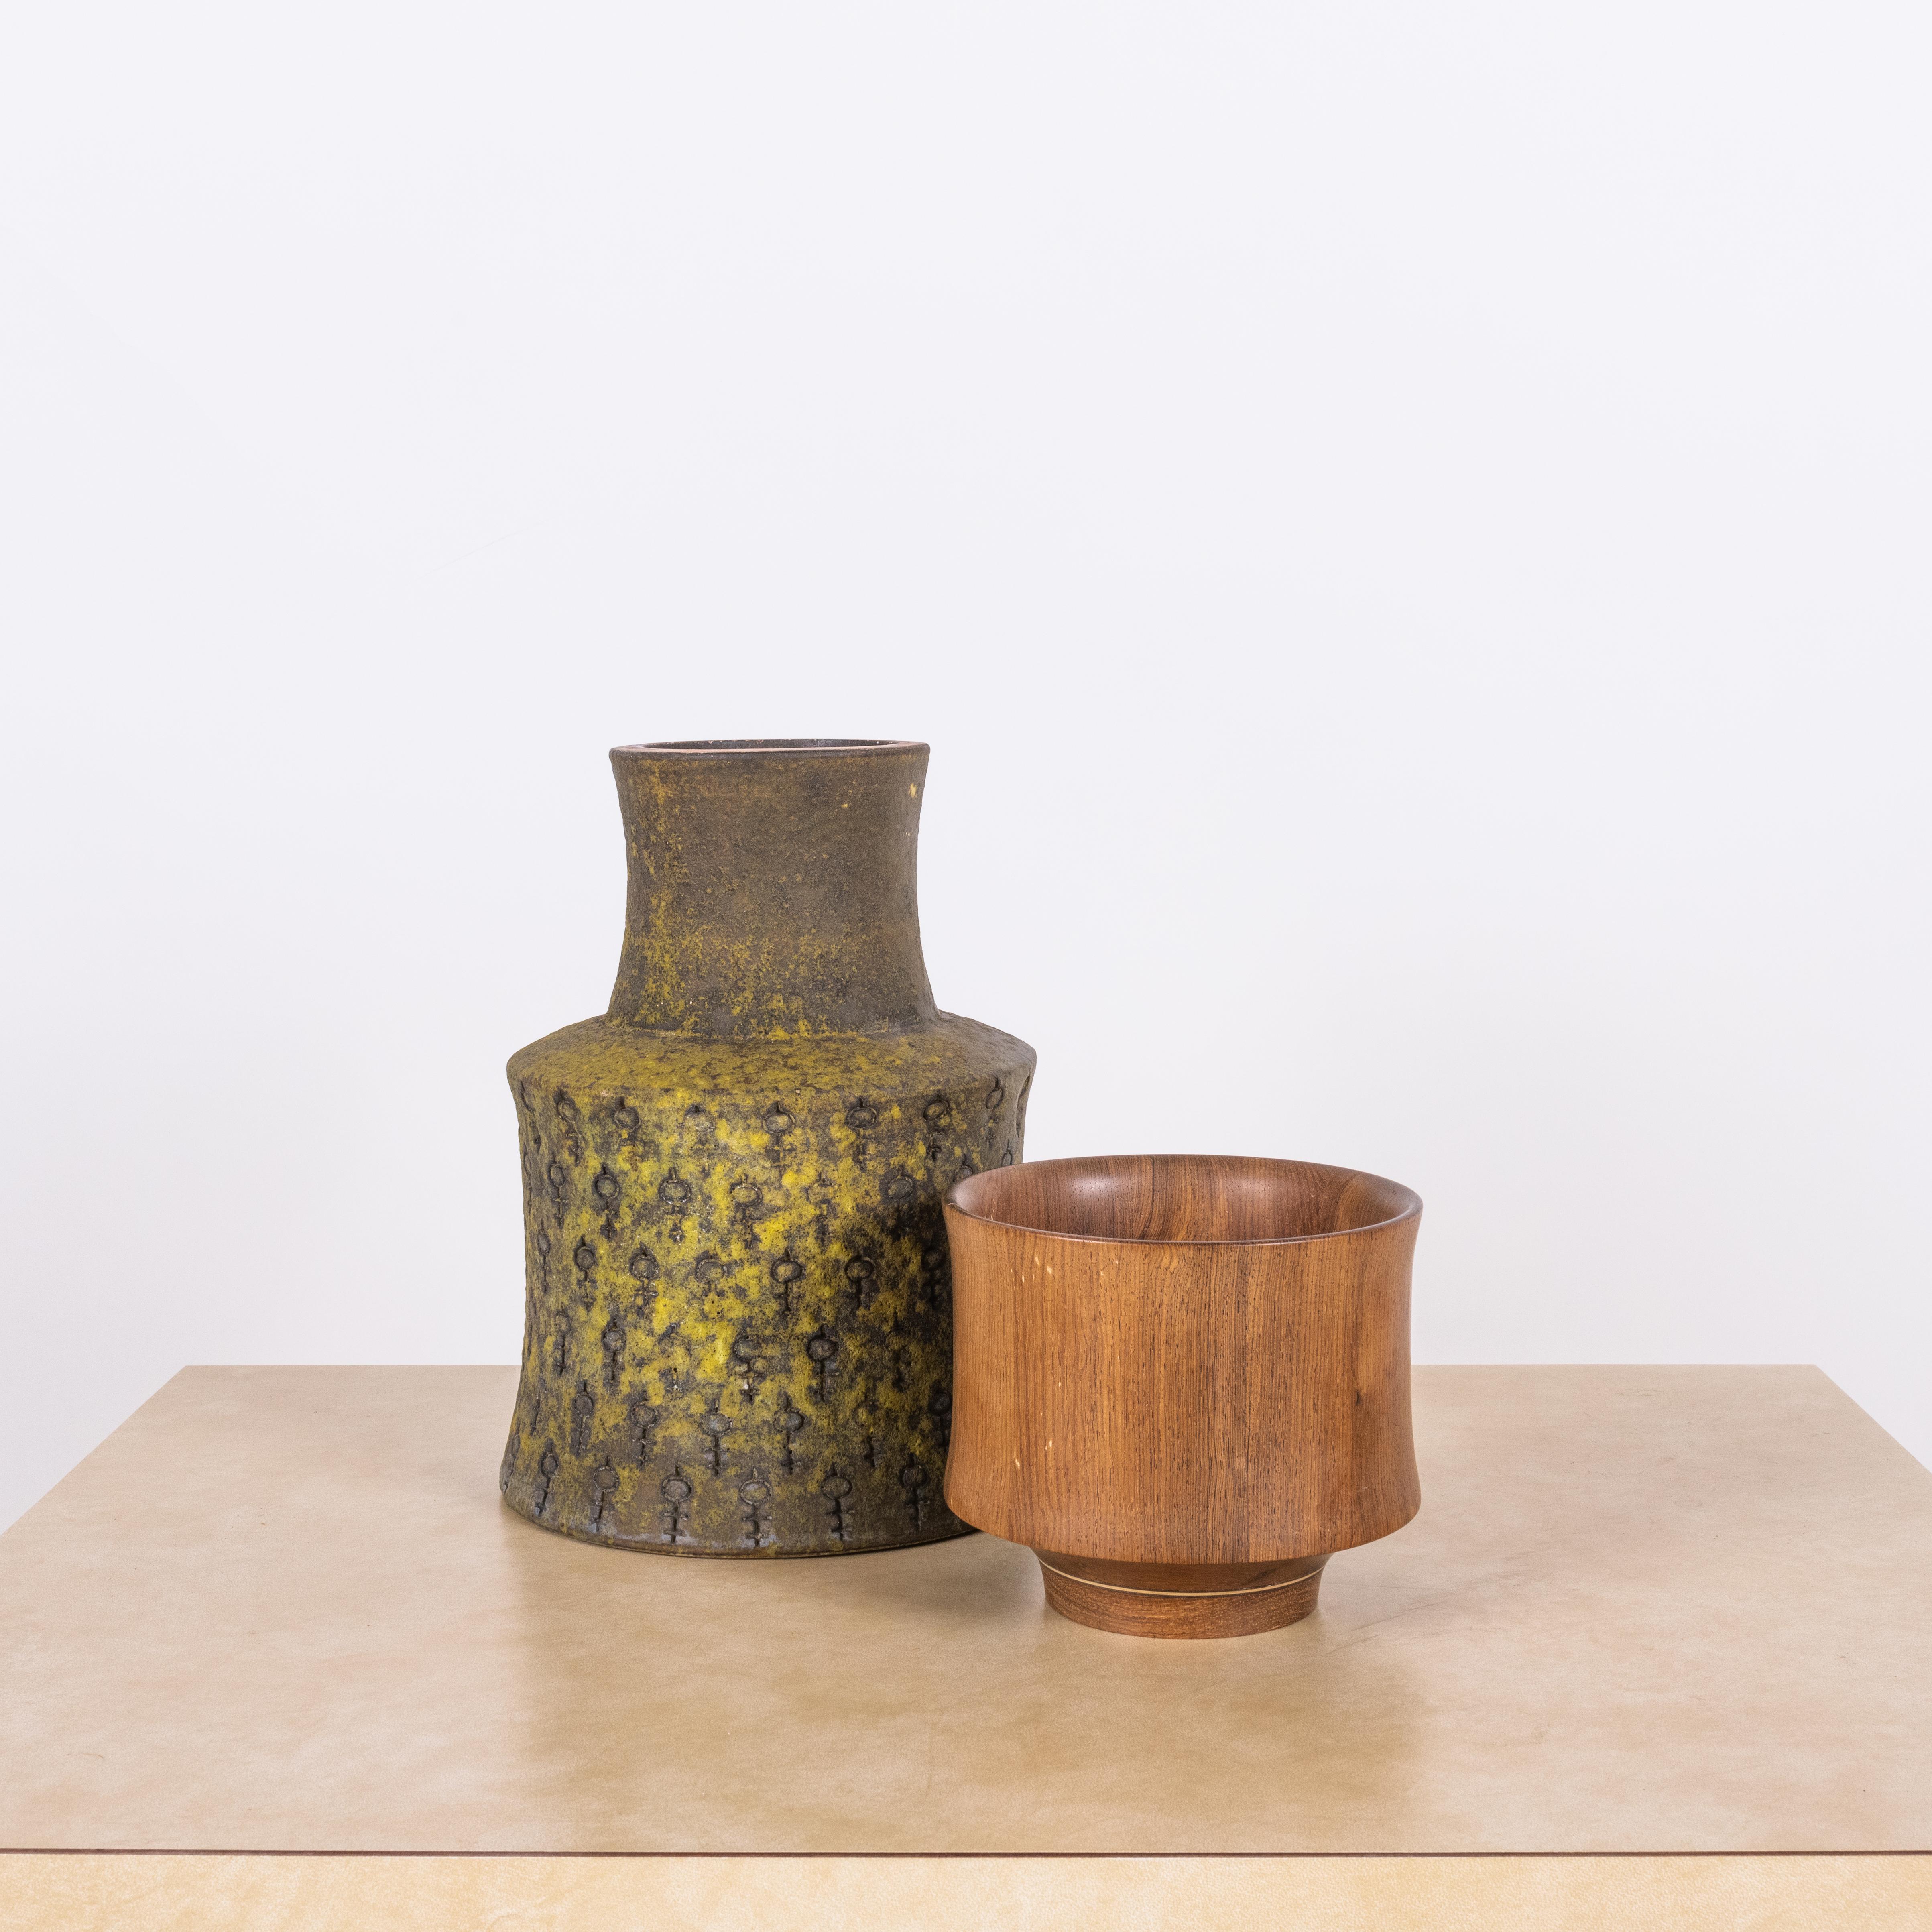 Seltene Vase von Bitossi mit passender Teakholzschale.

Unglaubliche Glasur auf der Vase.

Die angegebenen Maße beziehen sich auf die Vase.

Verkauft als dekoratives Set (Vase und Schale).